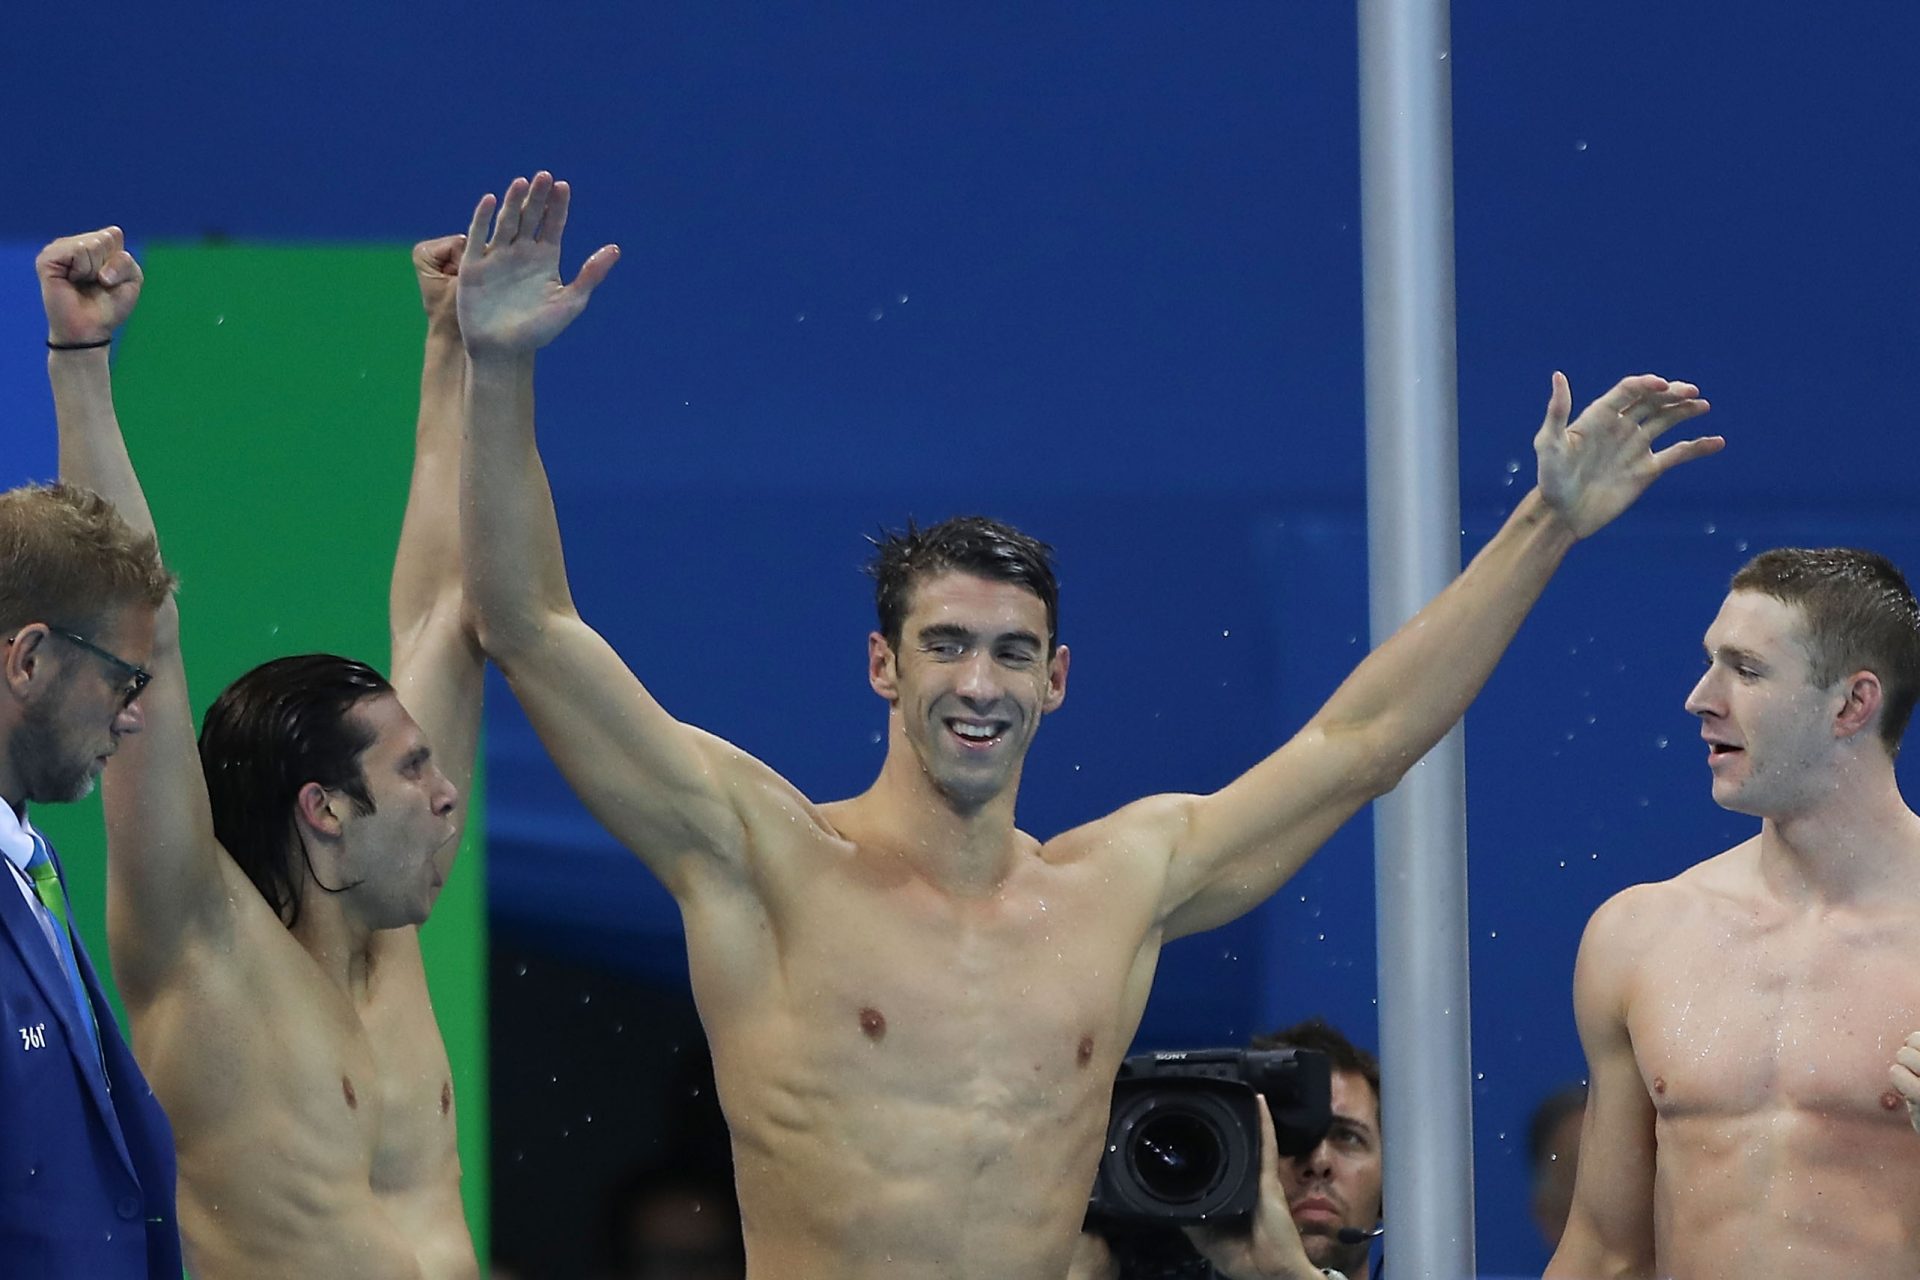 Michael Phelps says goodbye